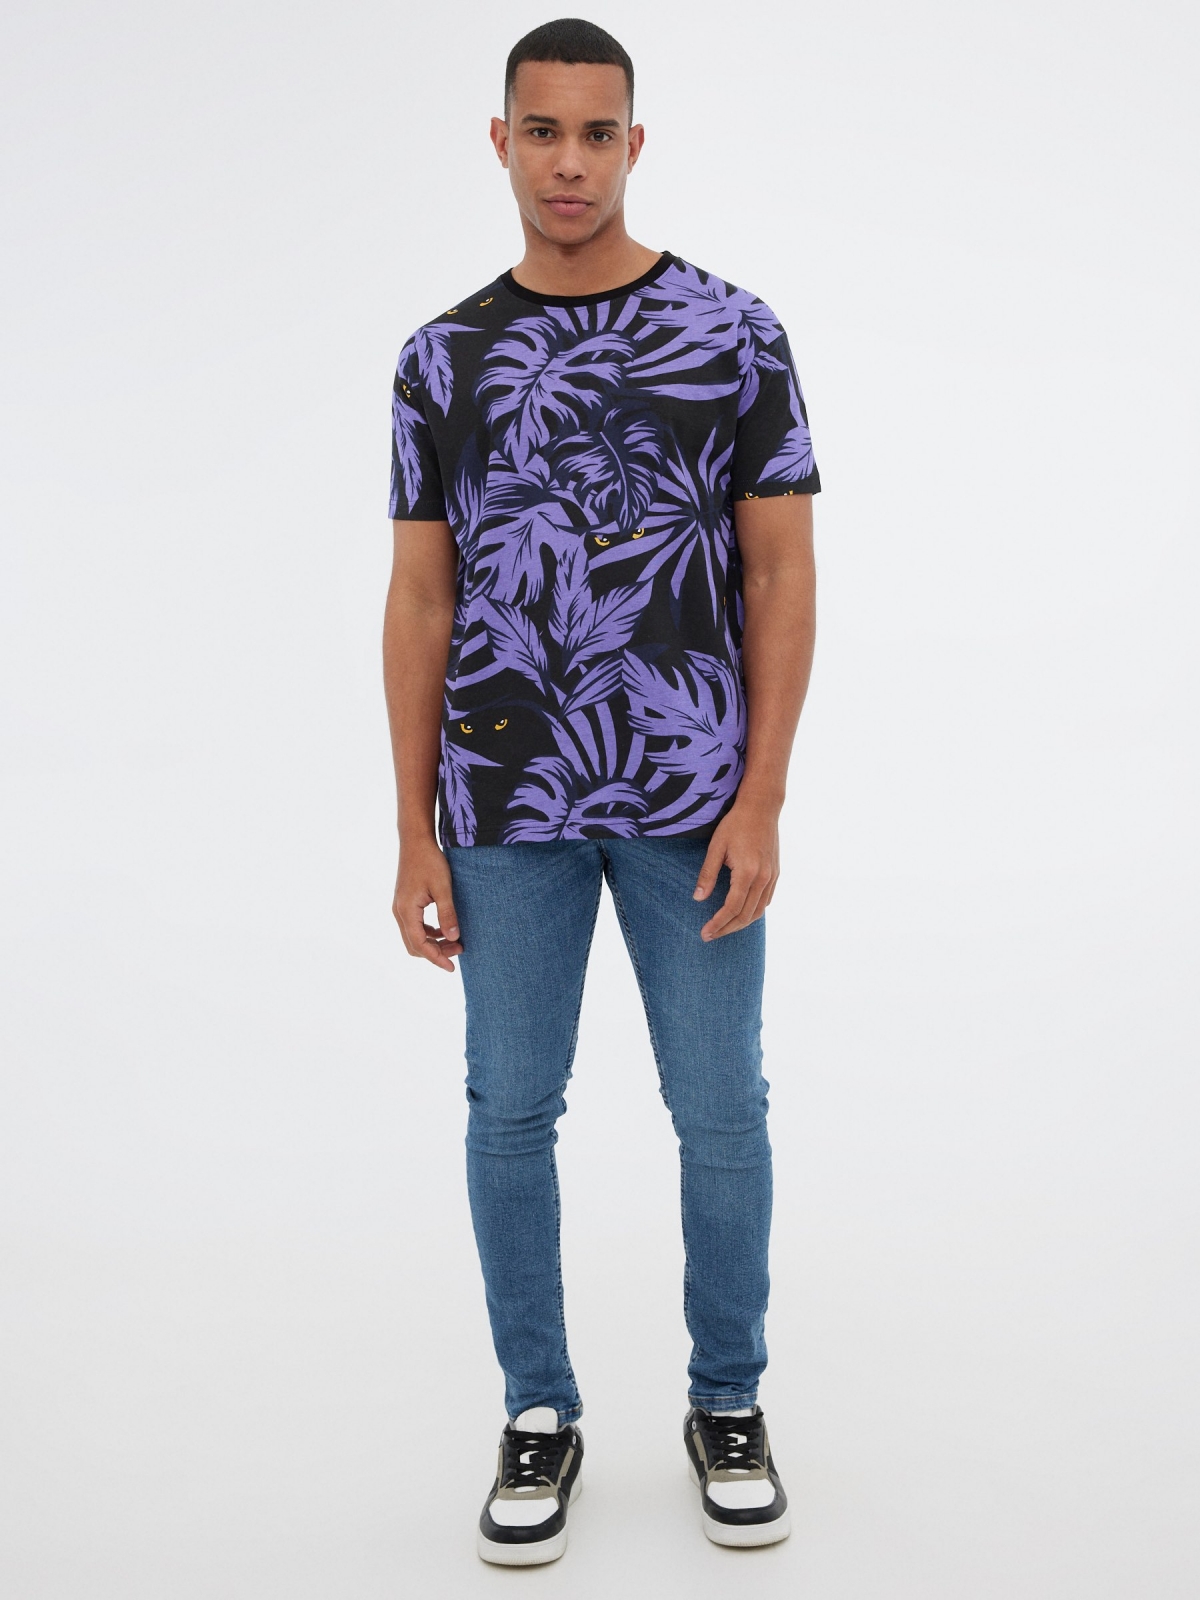 T-shirt tropical púrpura preto vista geral frontal